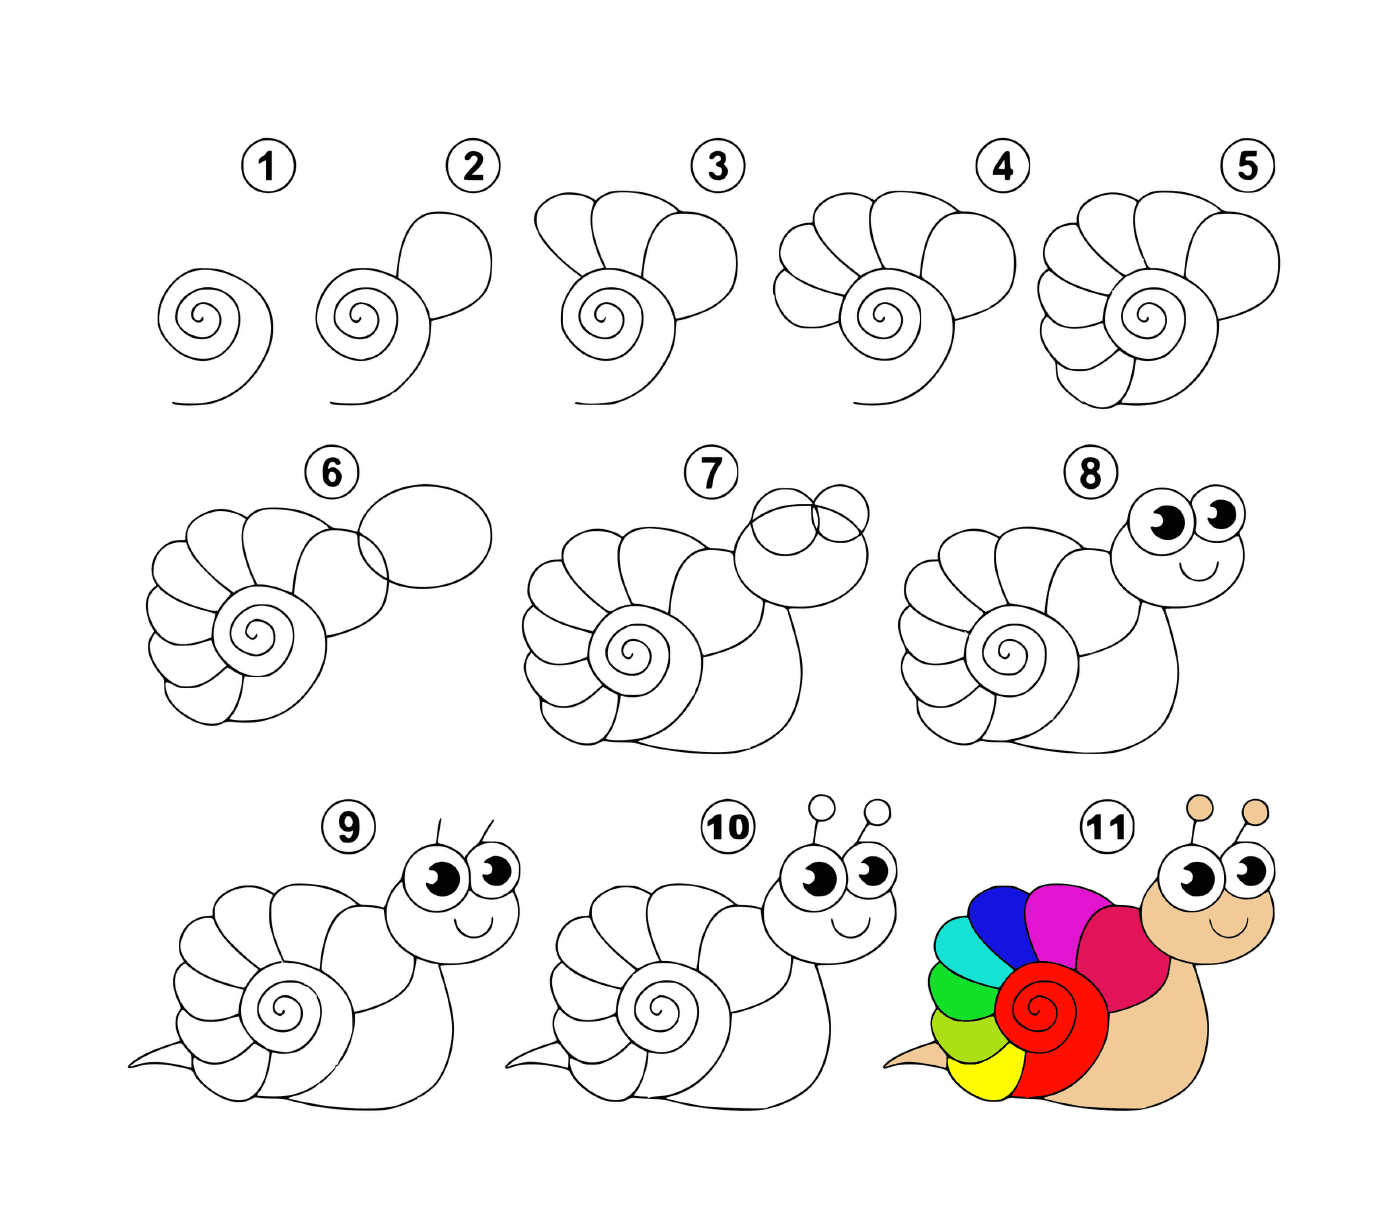   Comment dessiner un escargot facilement 